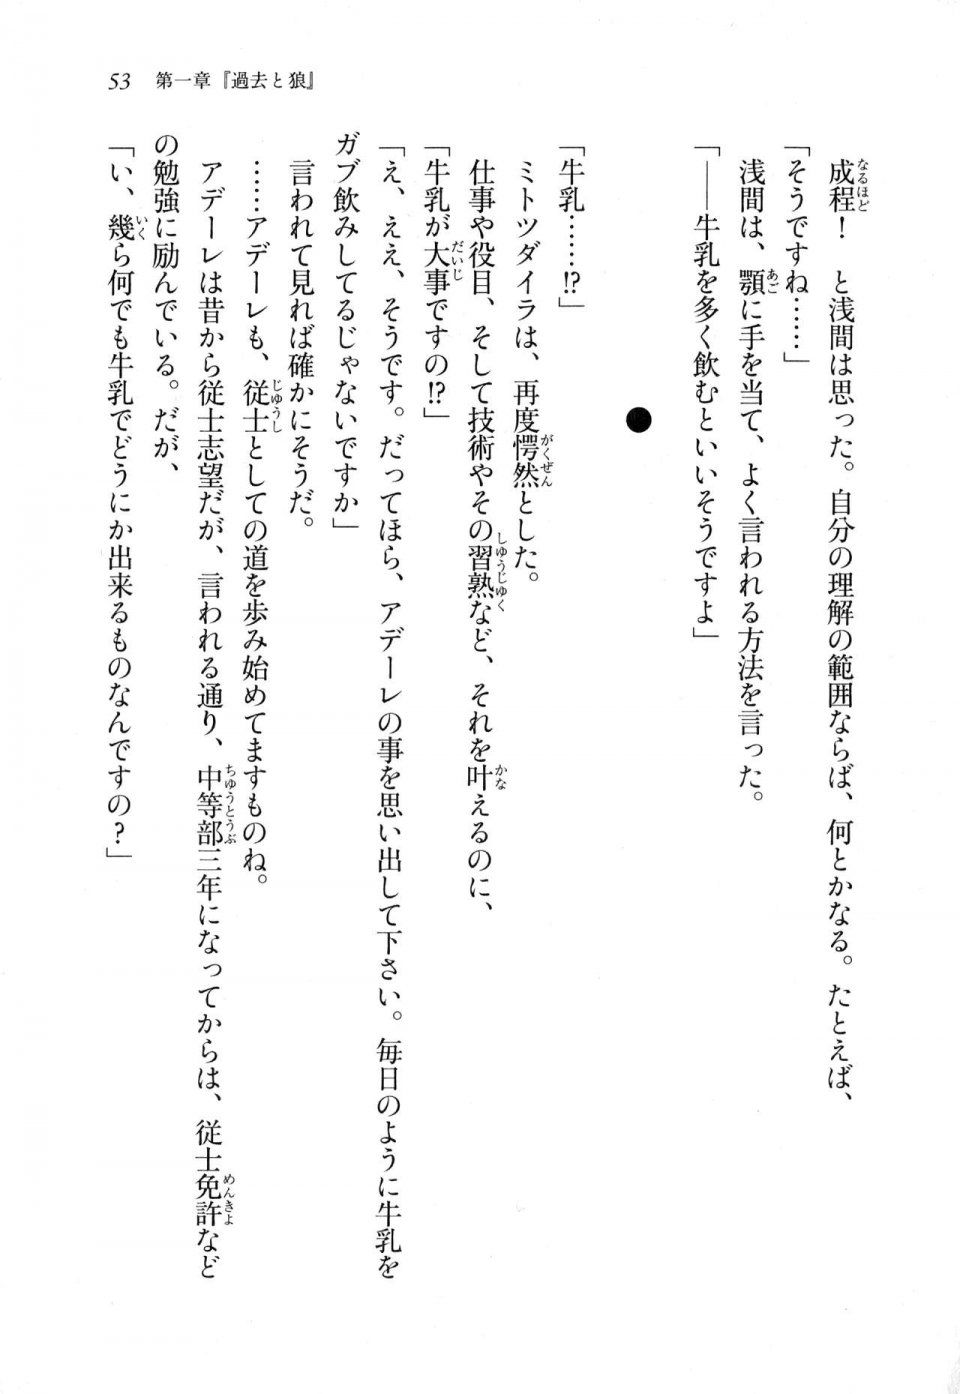 Kyoukai Senjou no Horizon LN Sidestory Vol 1 - Photo #51